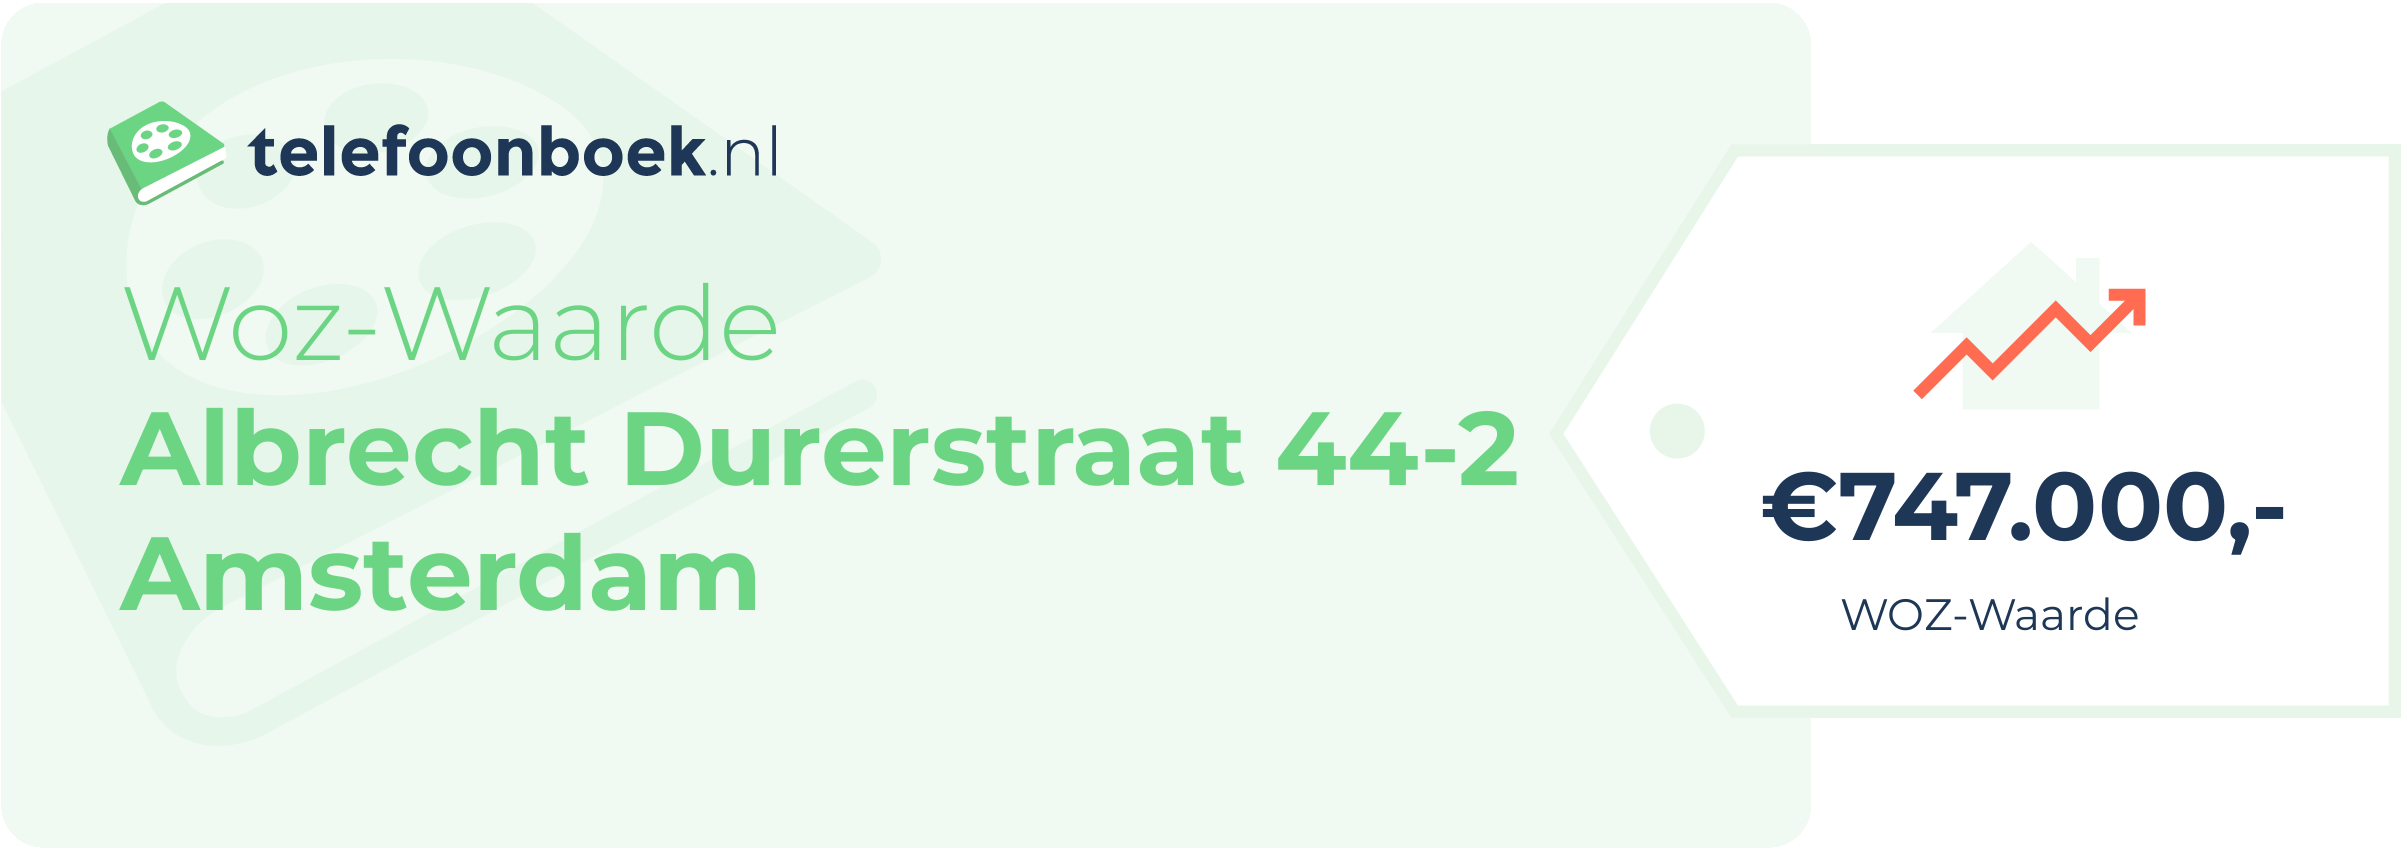 WOZ-waarde Albrecht Durerstraat 44-2 Amsterdam